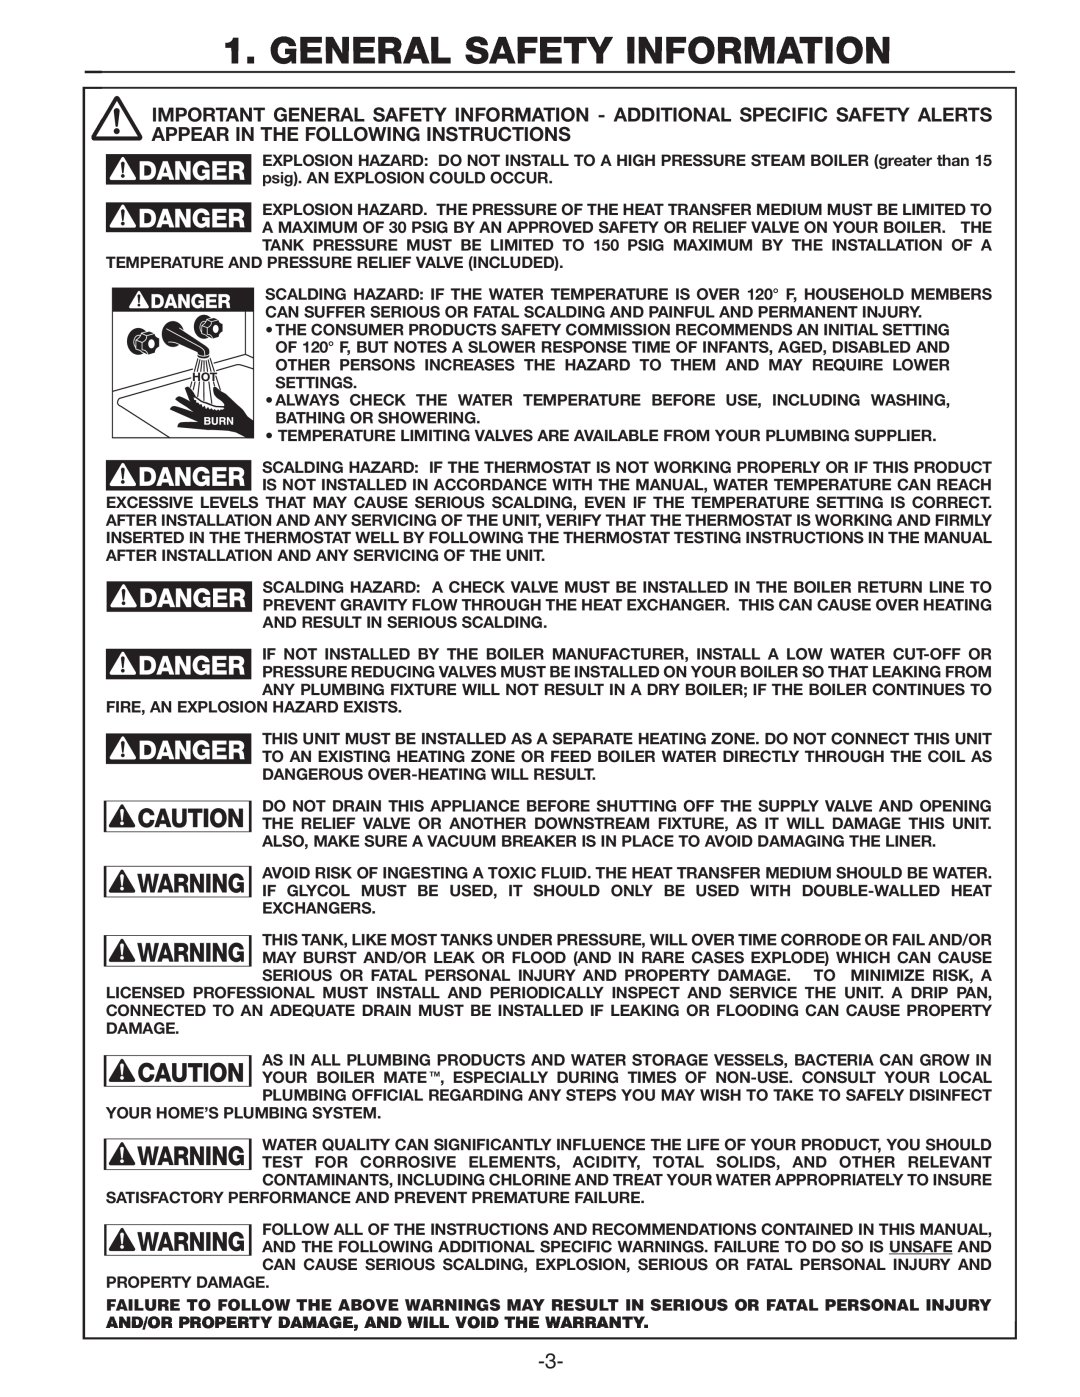 Amtrol TD-41ZDW, TD-7ZDW manual General Safety Information 